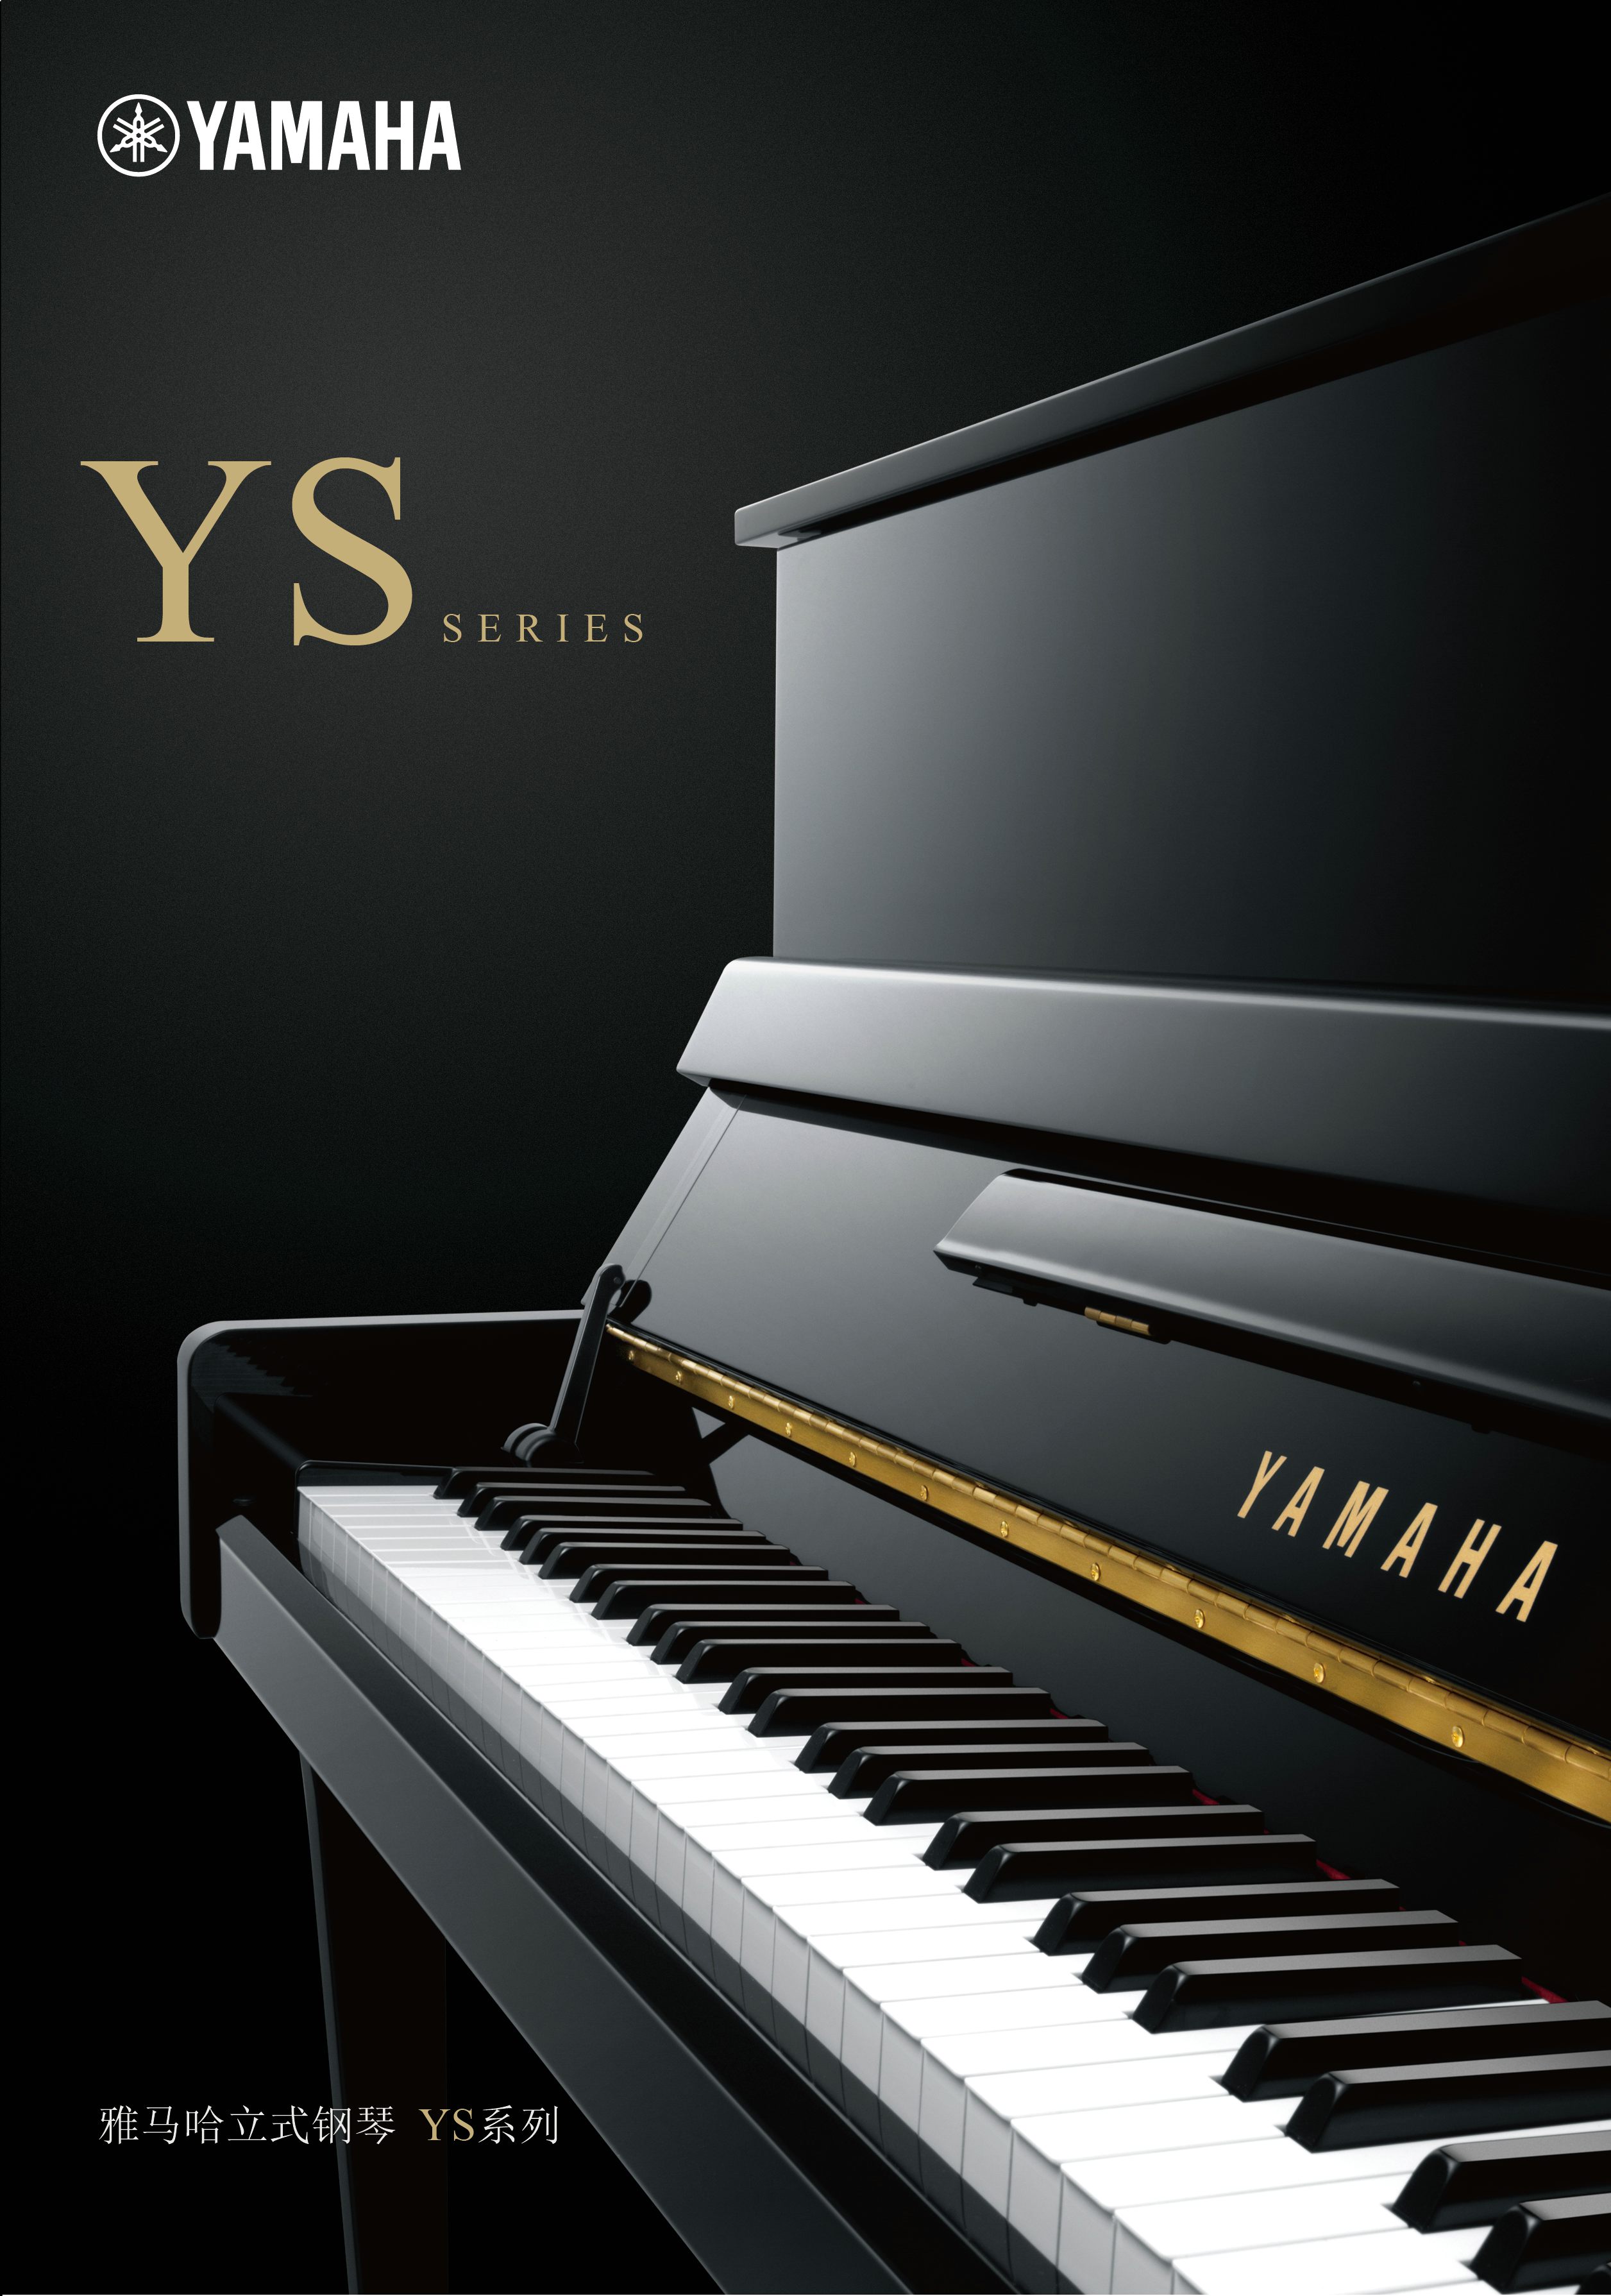 全新的Betway必威App体育
钢琴YS系列现已到来